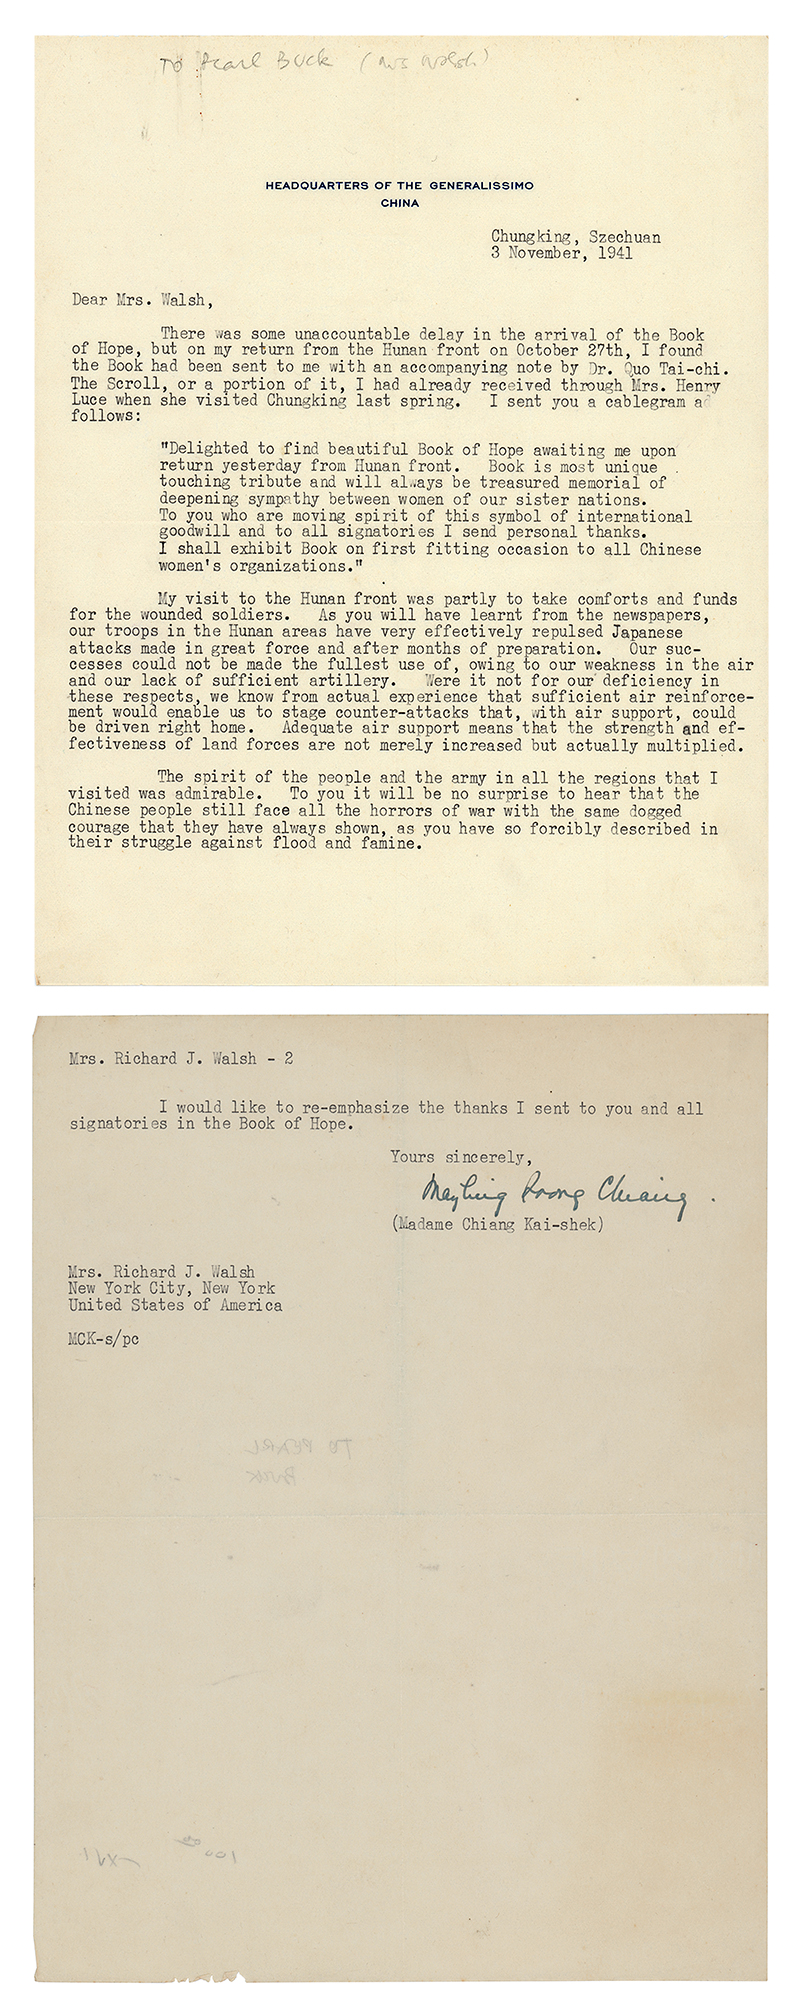 Carta a Pearl S. Buck de Soong May-Ling, 3 de noviembre de 1941. Wiikimedia commons, domino público.